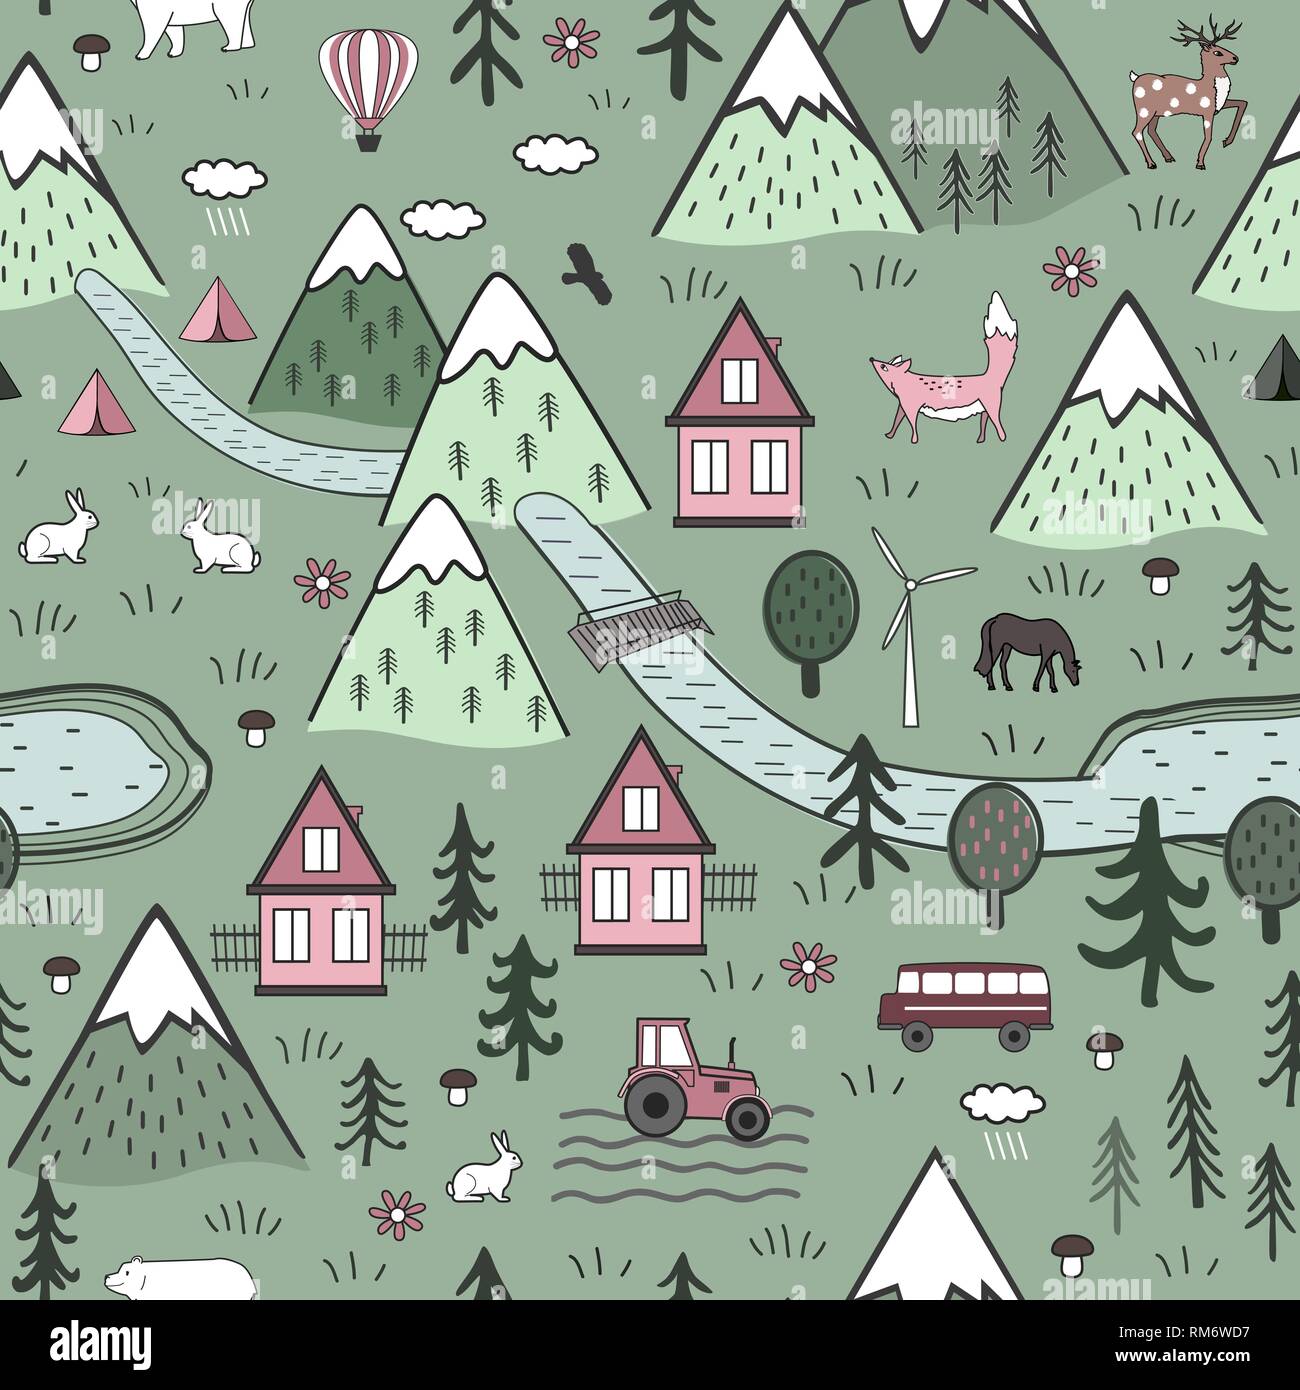 Carino disegnato a mano vettore scandinavo Seamless pattern con case, gli animali, gli alberi, antico castello e le montagne. Natura nordica concetto del paesaggio. Illustrazione Vettoriale